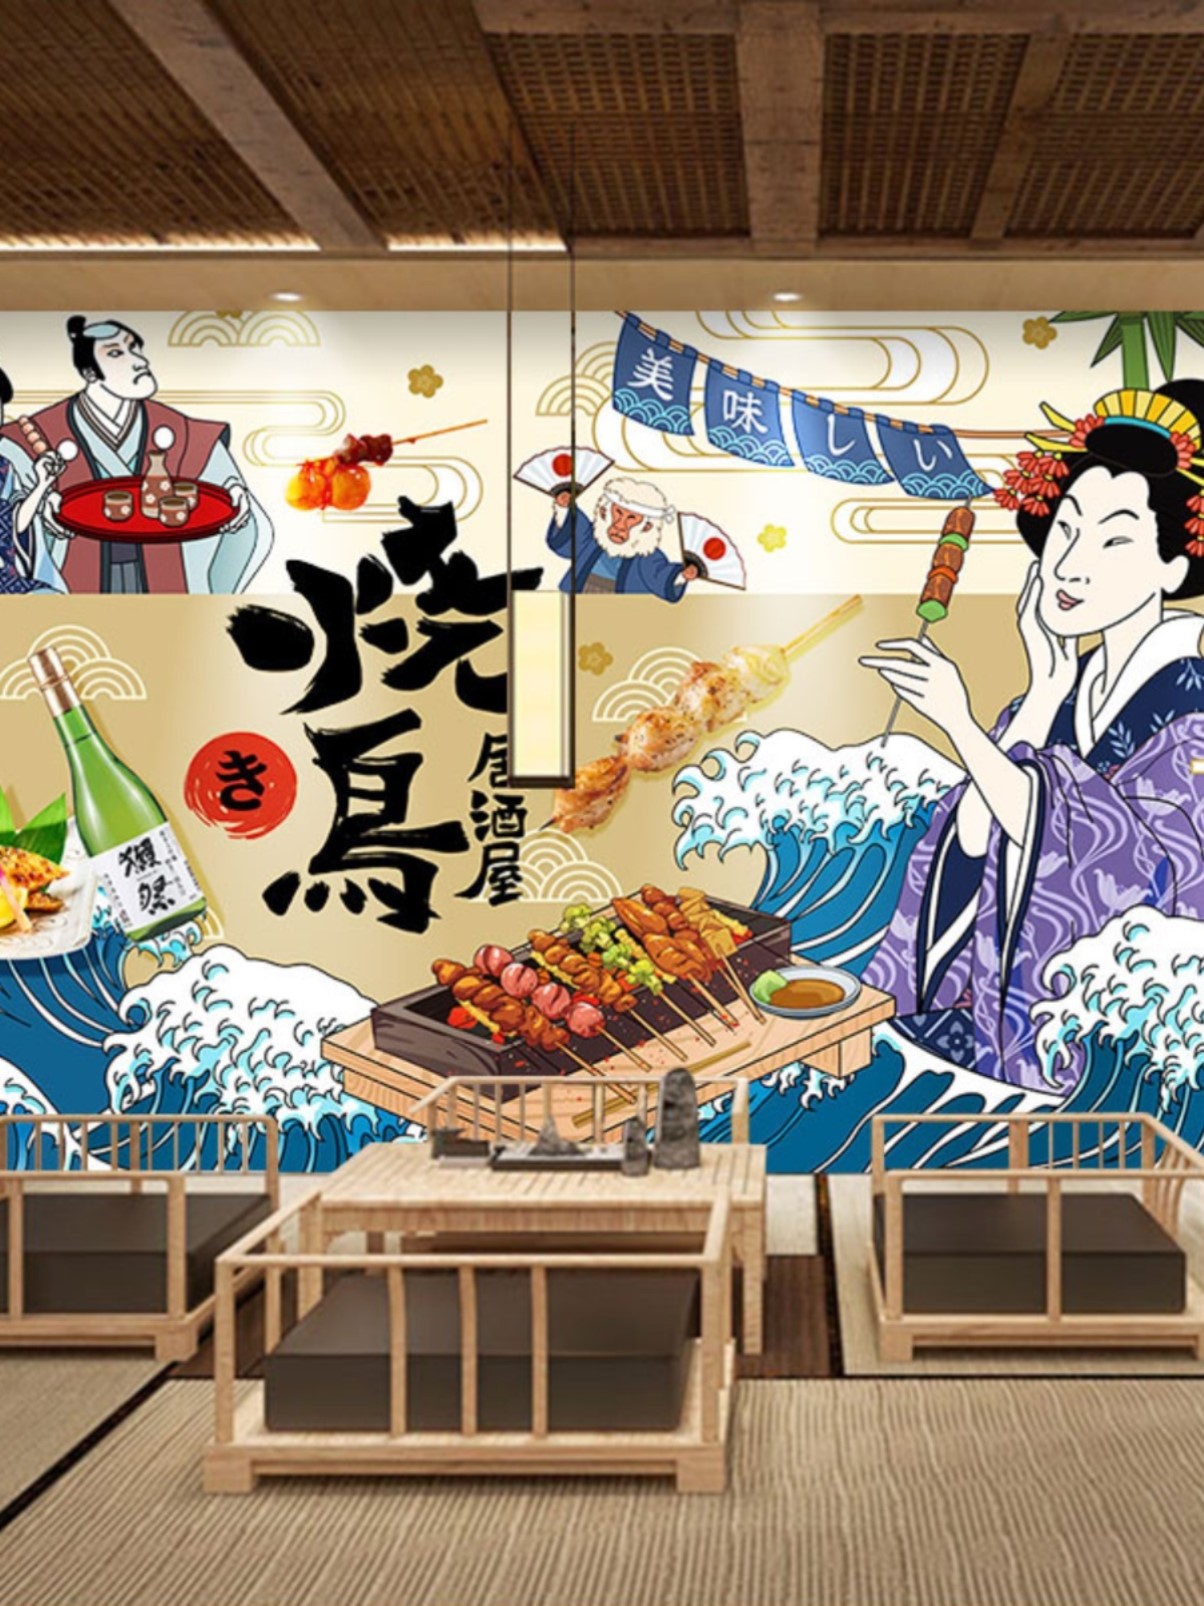 日本烧鸟装饰画墙纸日式烤肉店串烧海报墙面壁画广告纸居酒屋壁纸